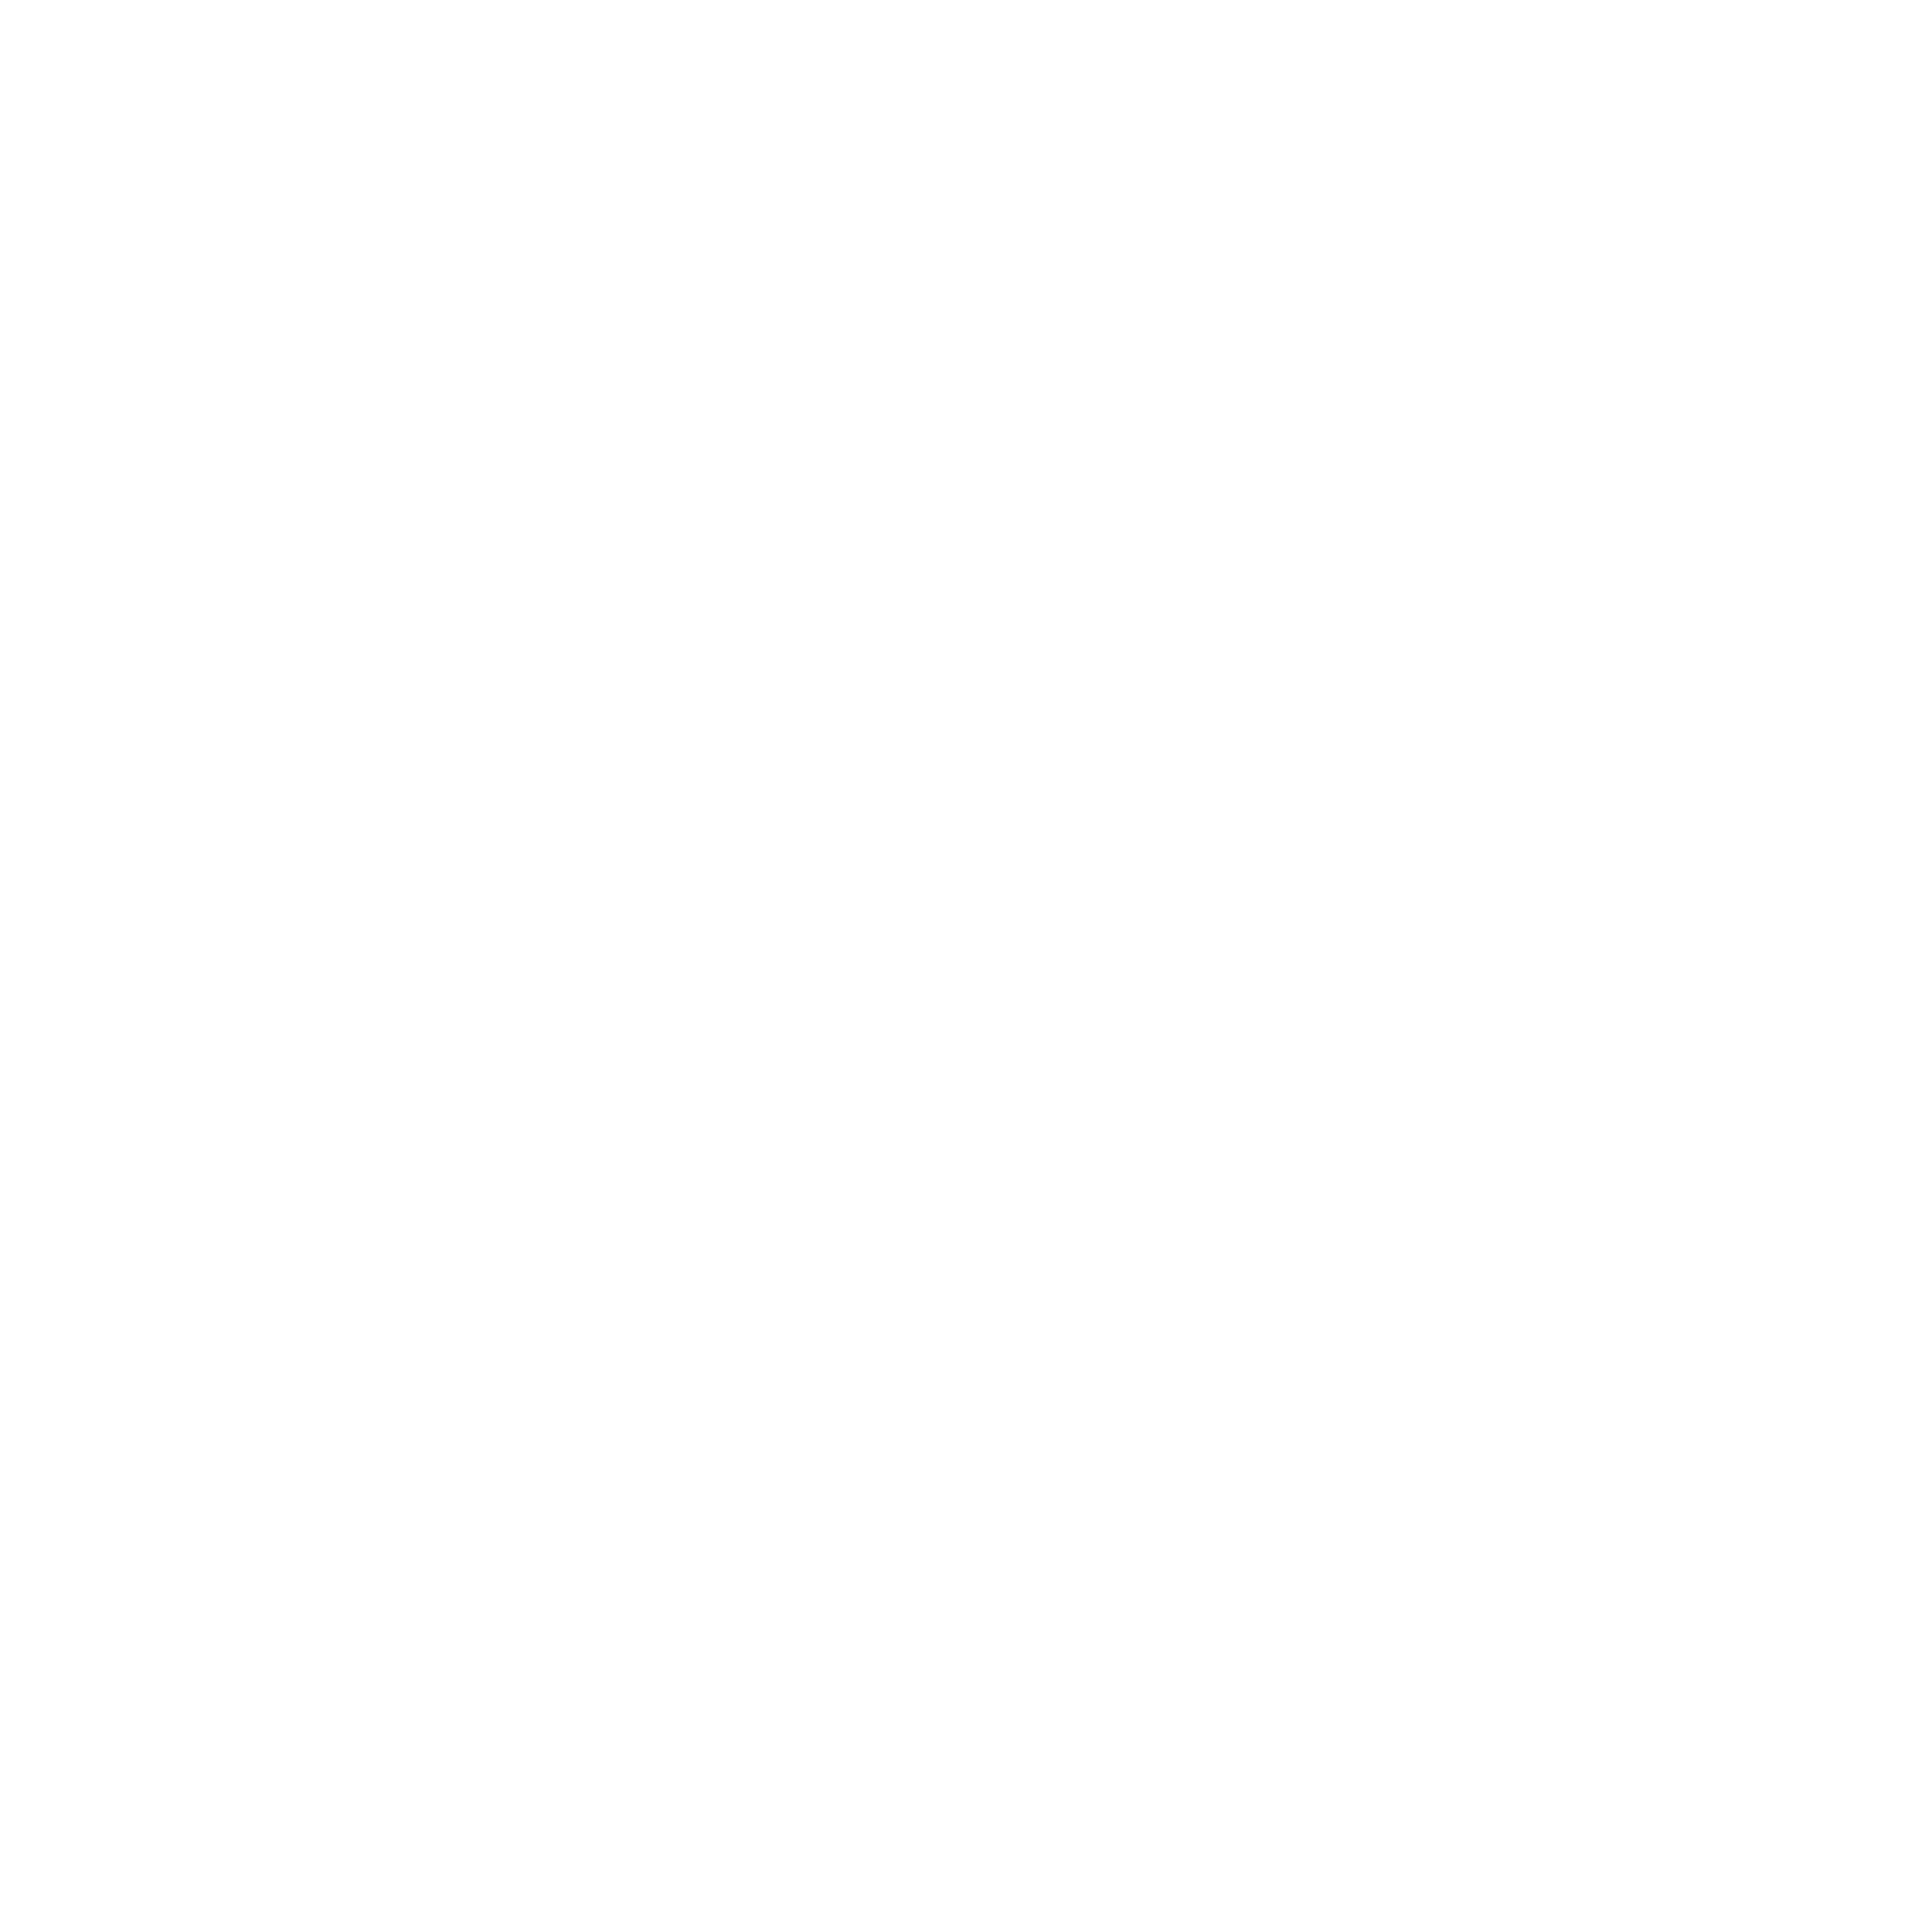 The Guy Arts Media